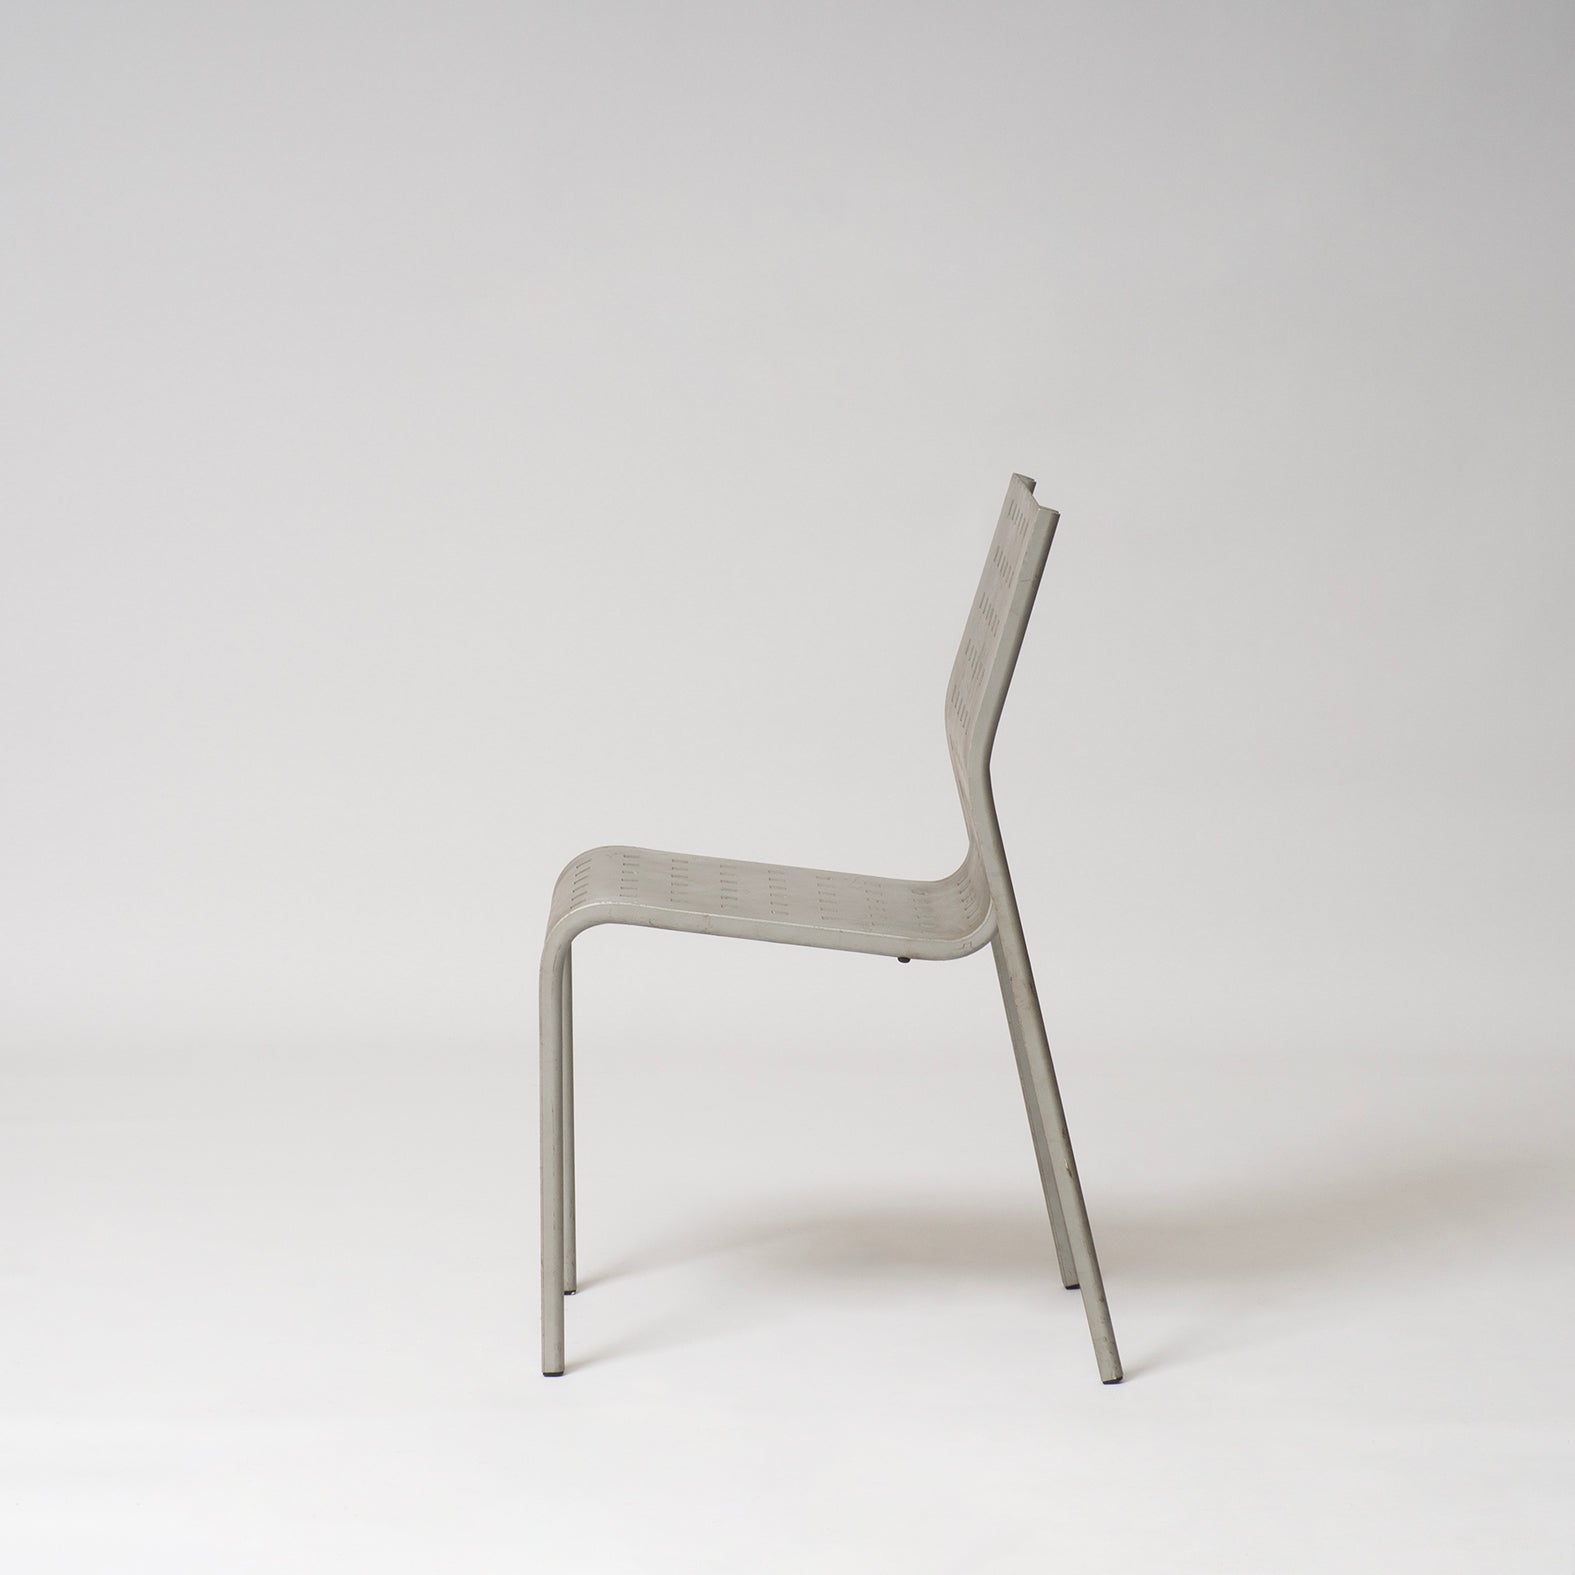 Mirandolina chairs No 2068 by Pietro Arosio